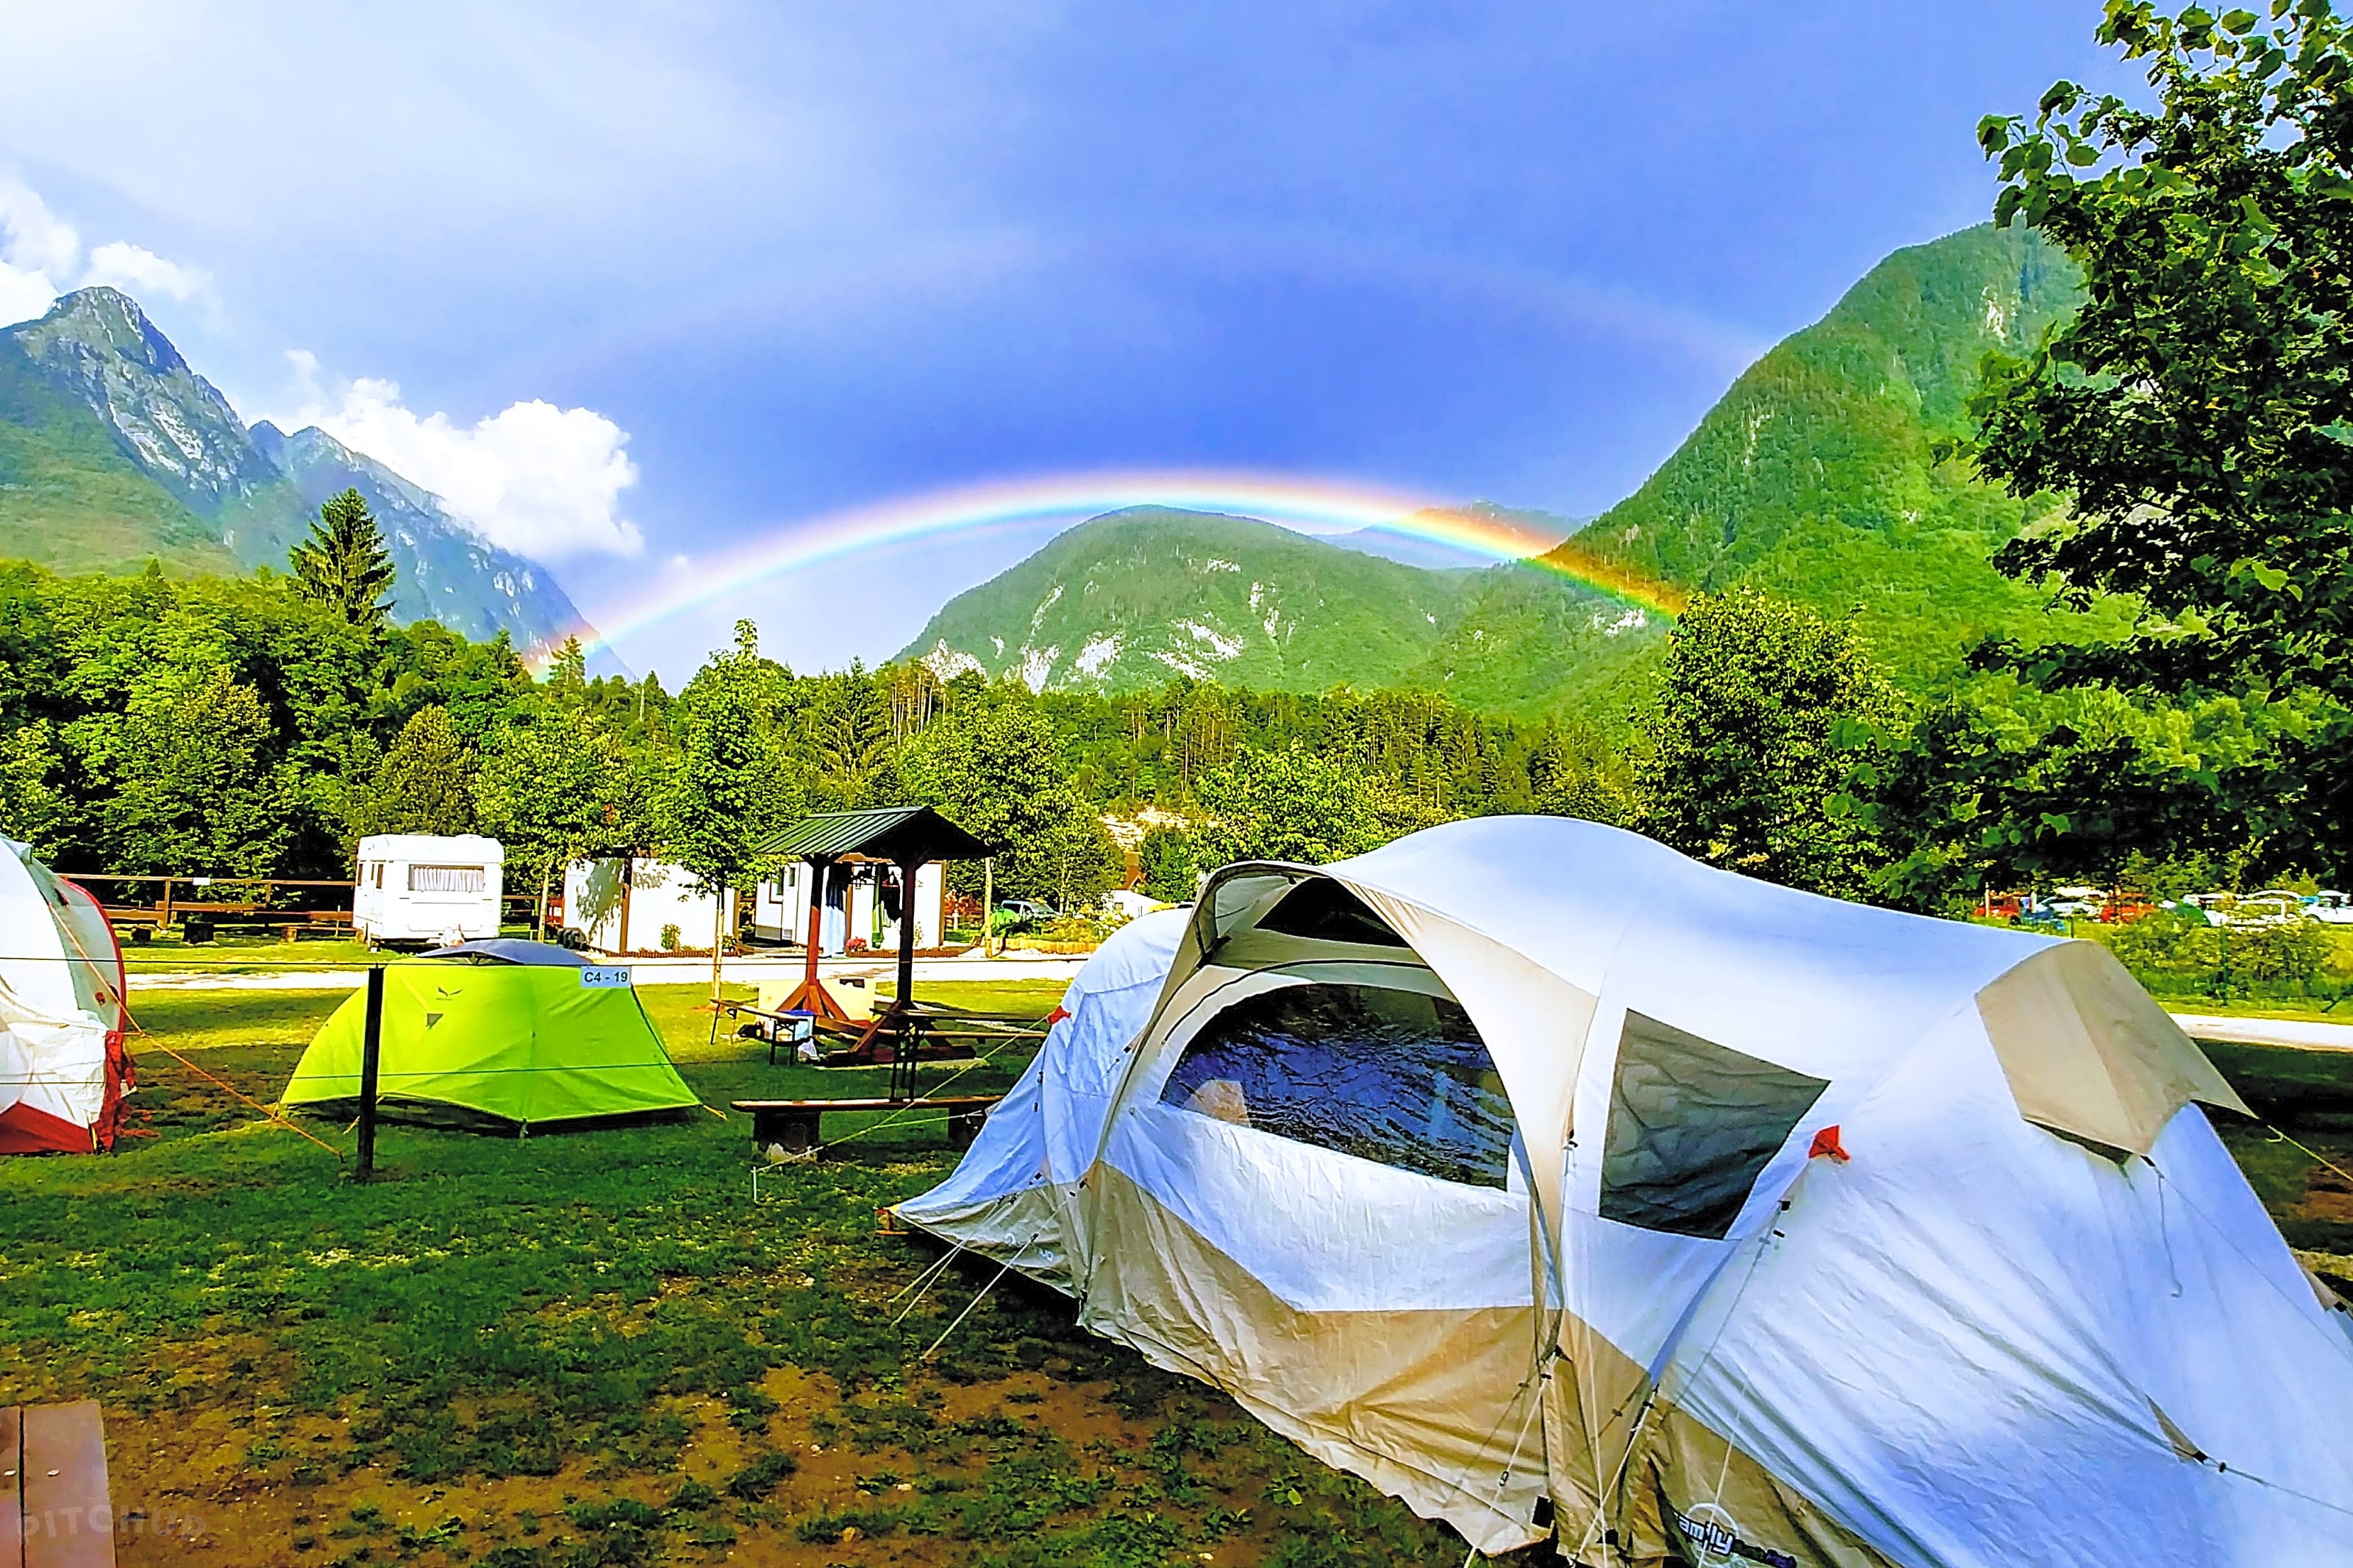 Кемпинг обзор. Палаточный лагерь Сочи. Глэмпинг красная Поляна в горах. Палатный лагерь в горах Сочи. Палаточный лагерь в горах.